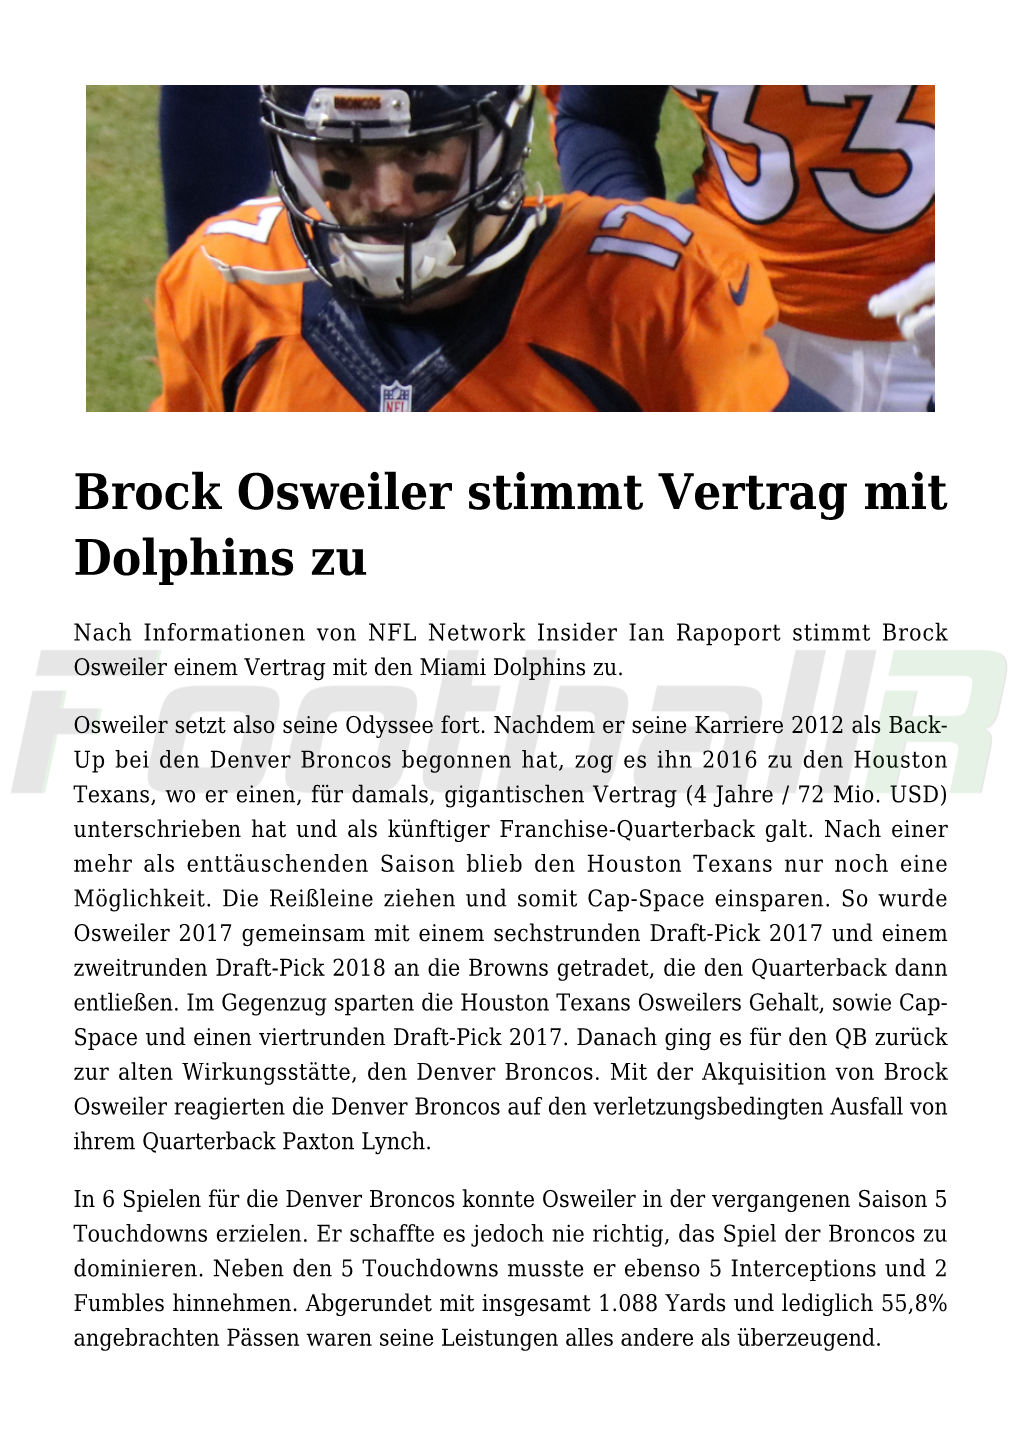 Brock Osweiler Stimmt Vertrag Mit Dolphins Zu